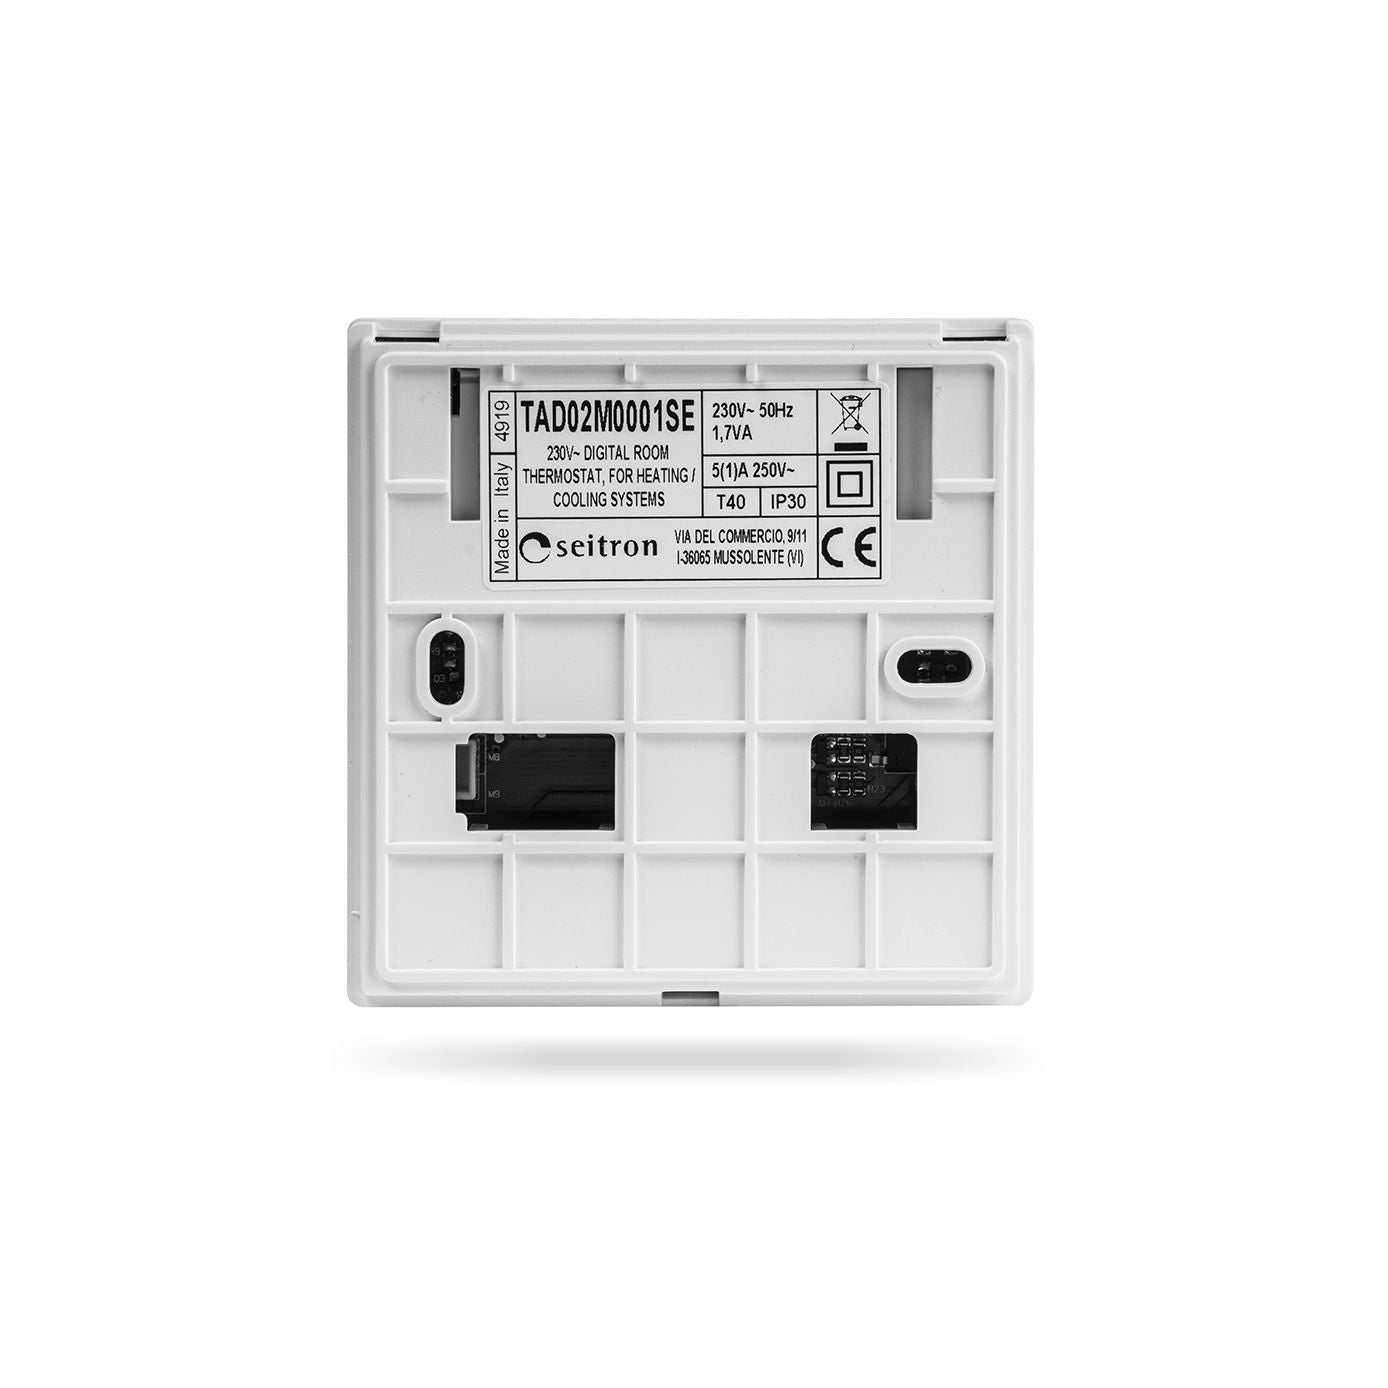 Seitron termostato digitale a batterie TAD02B